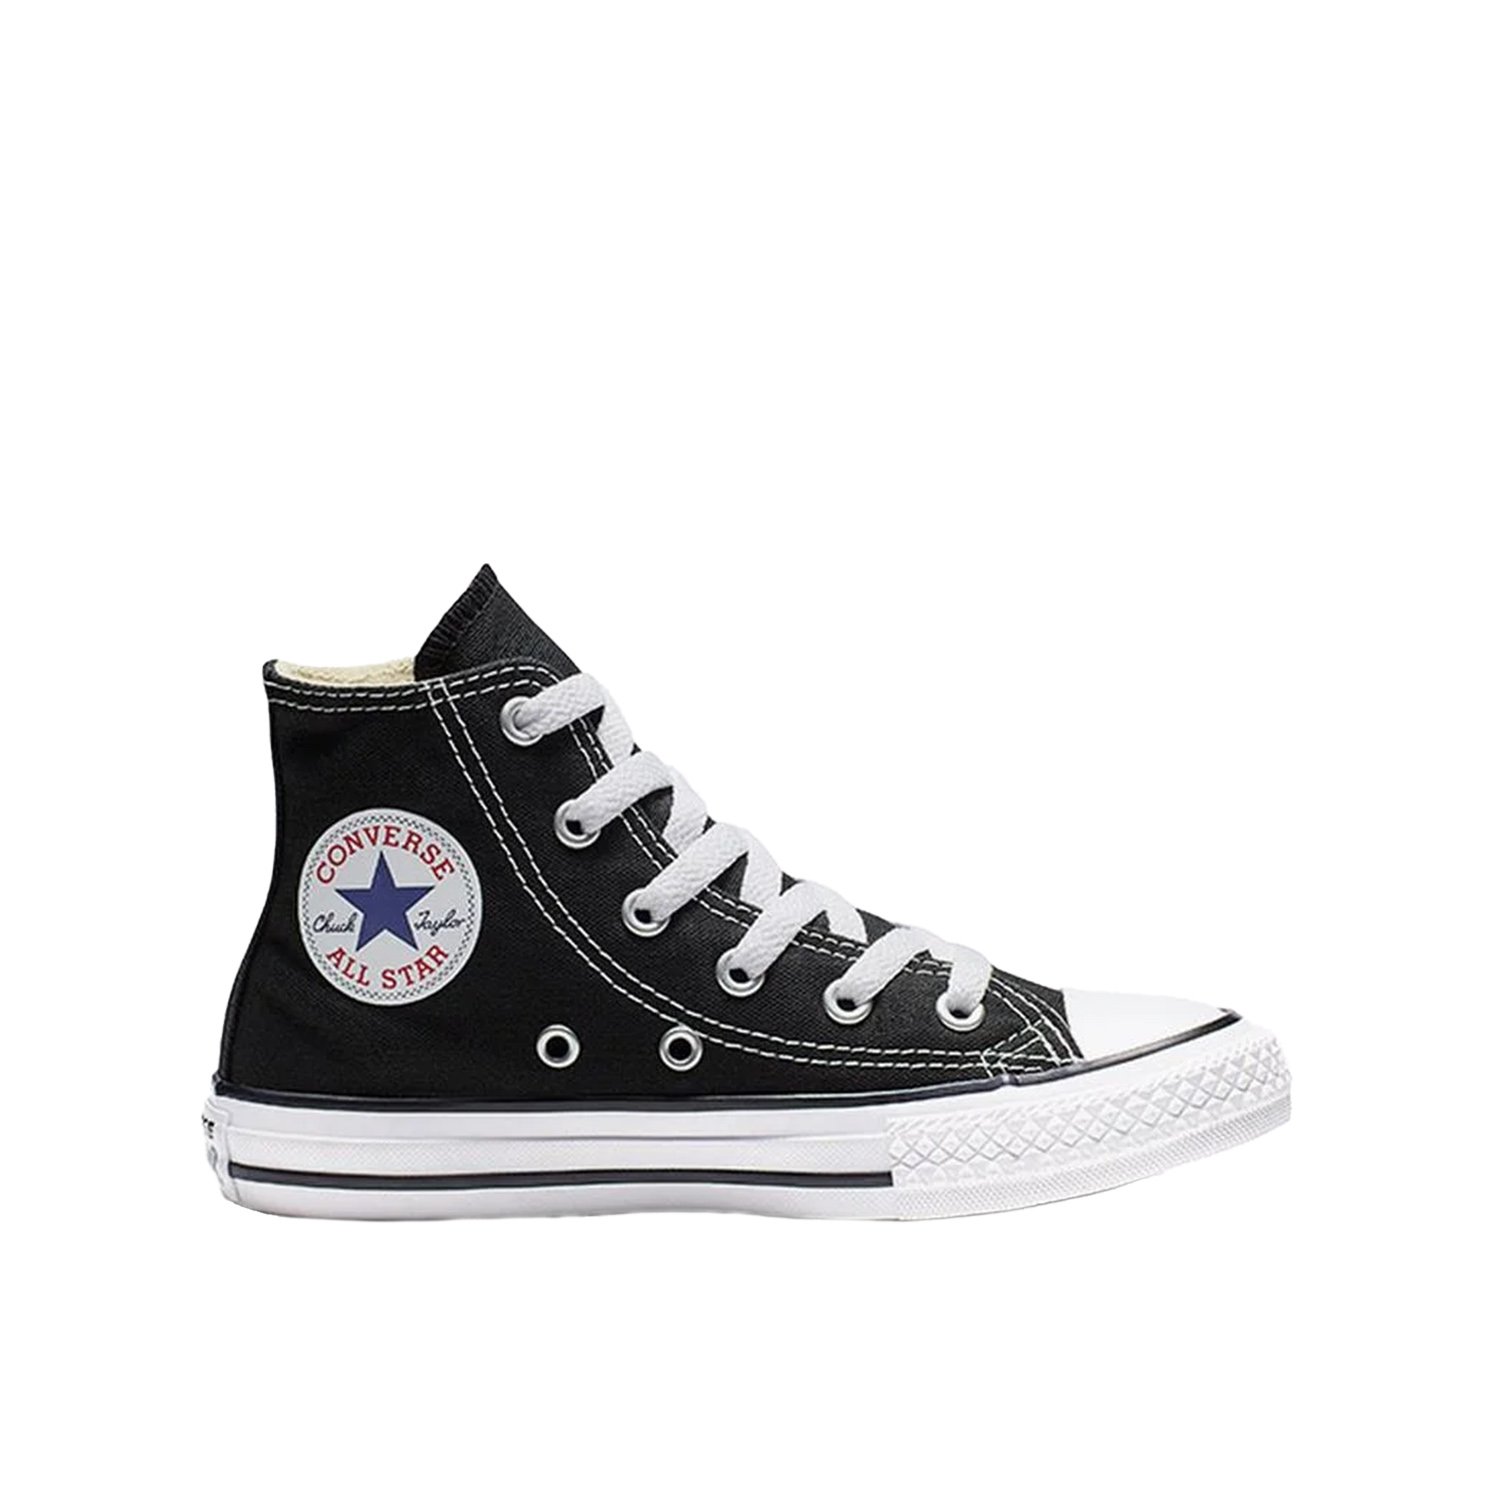 Converse Chuck Taylor All Star Classic Çocuk Ayakkabı - Siyah - 1